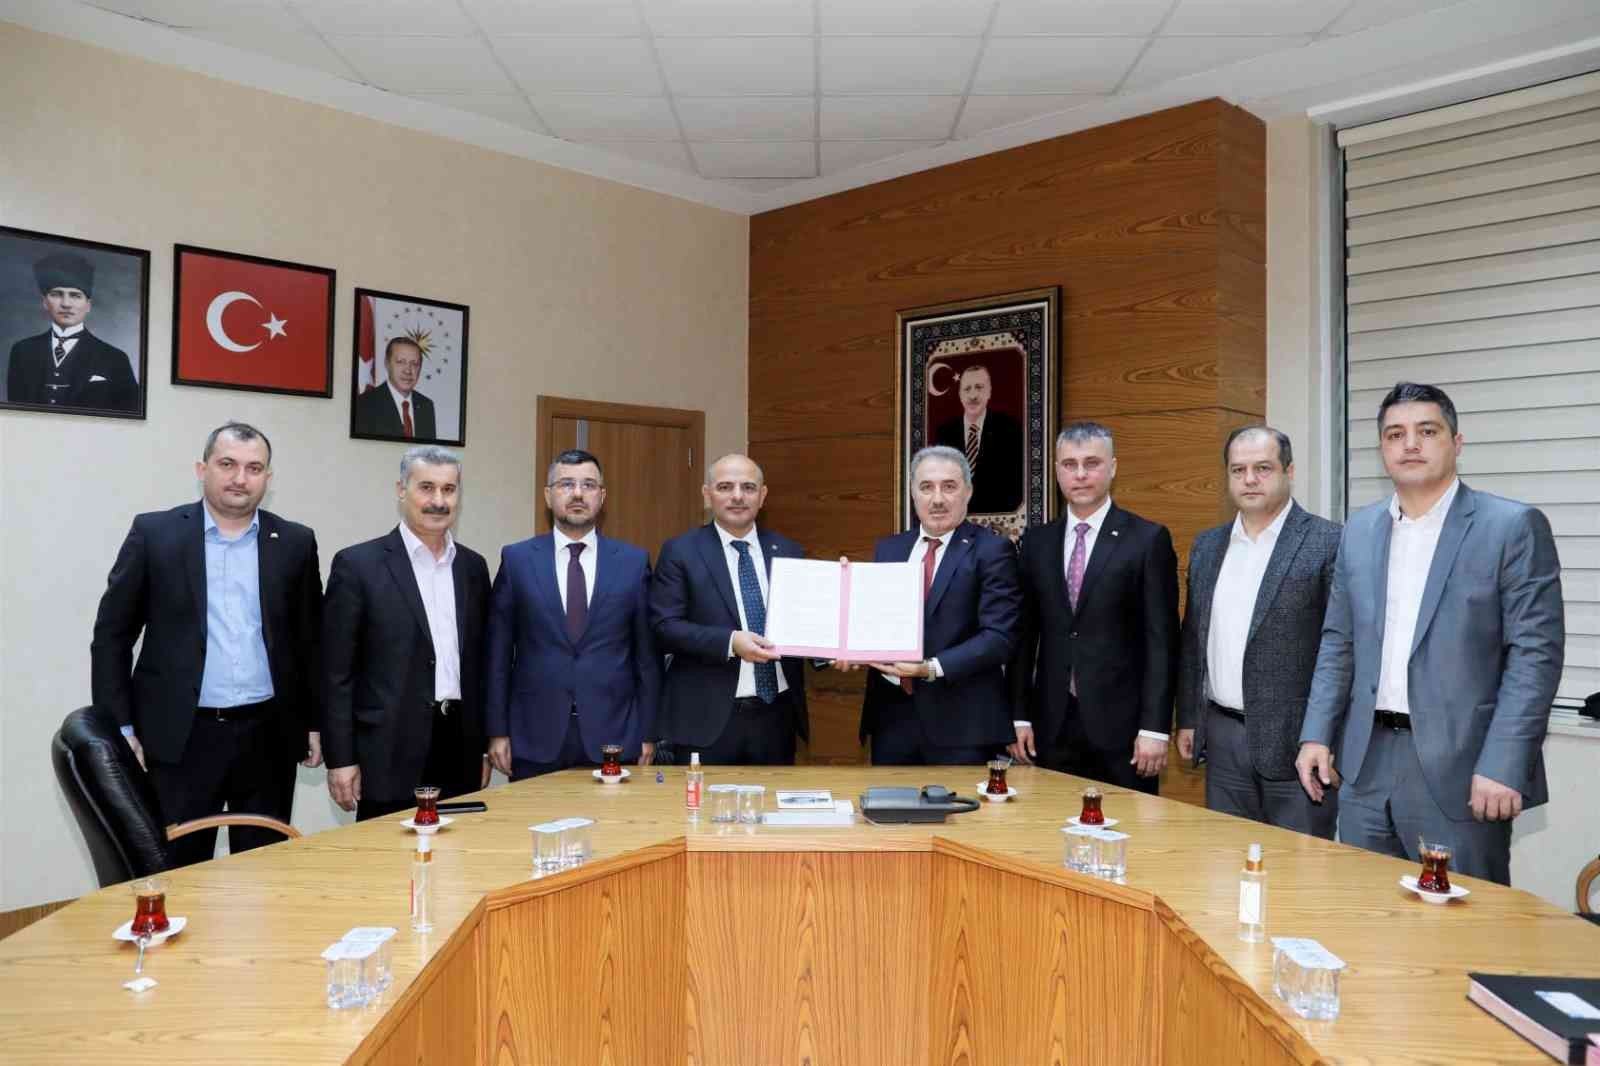 Körfez’de Sosyal Denge Sözleşmesi imzalandı #kocaeli